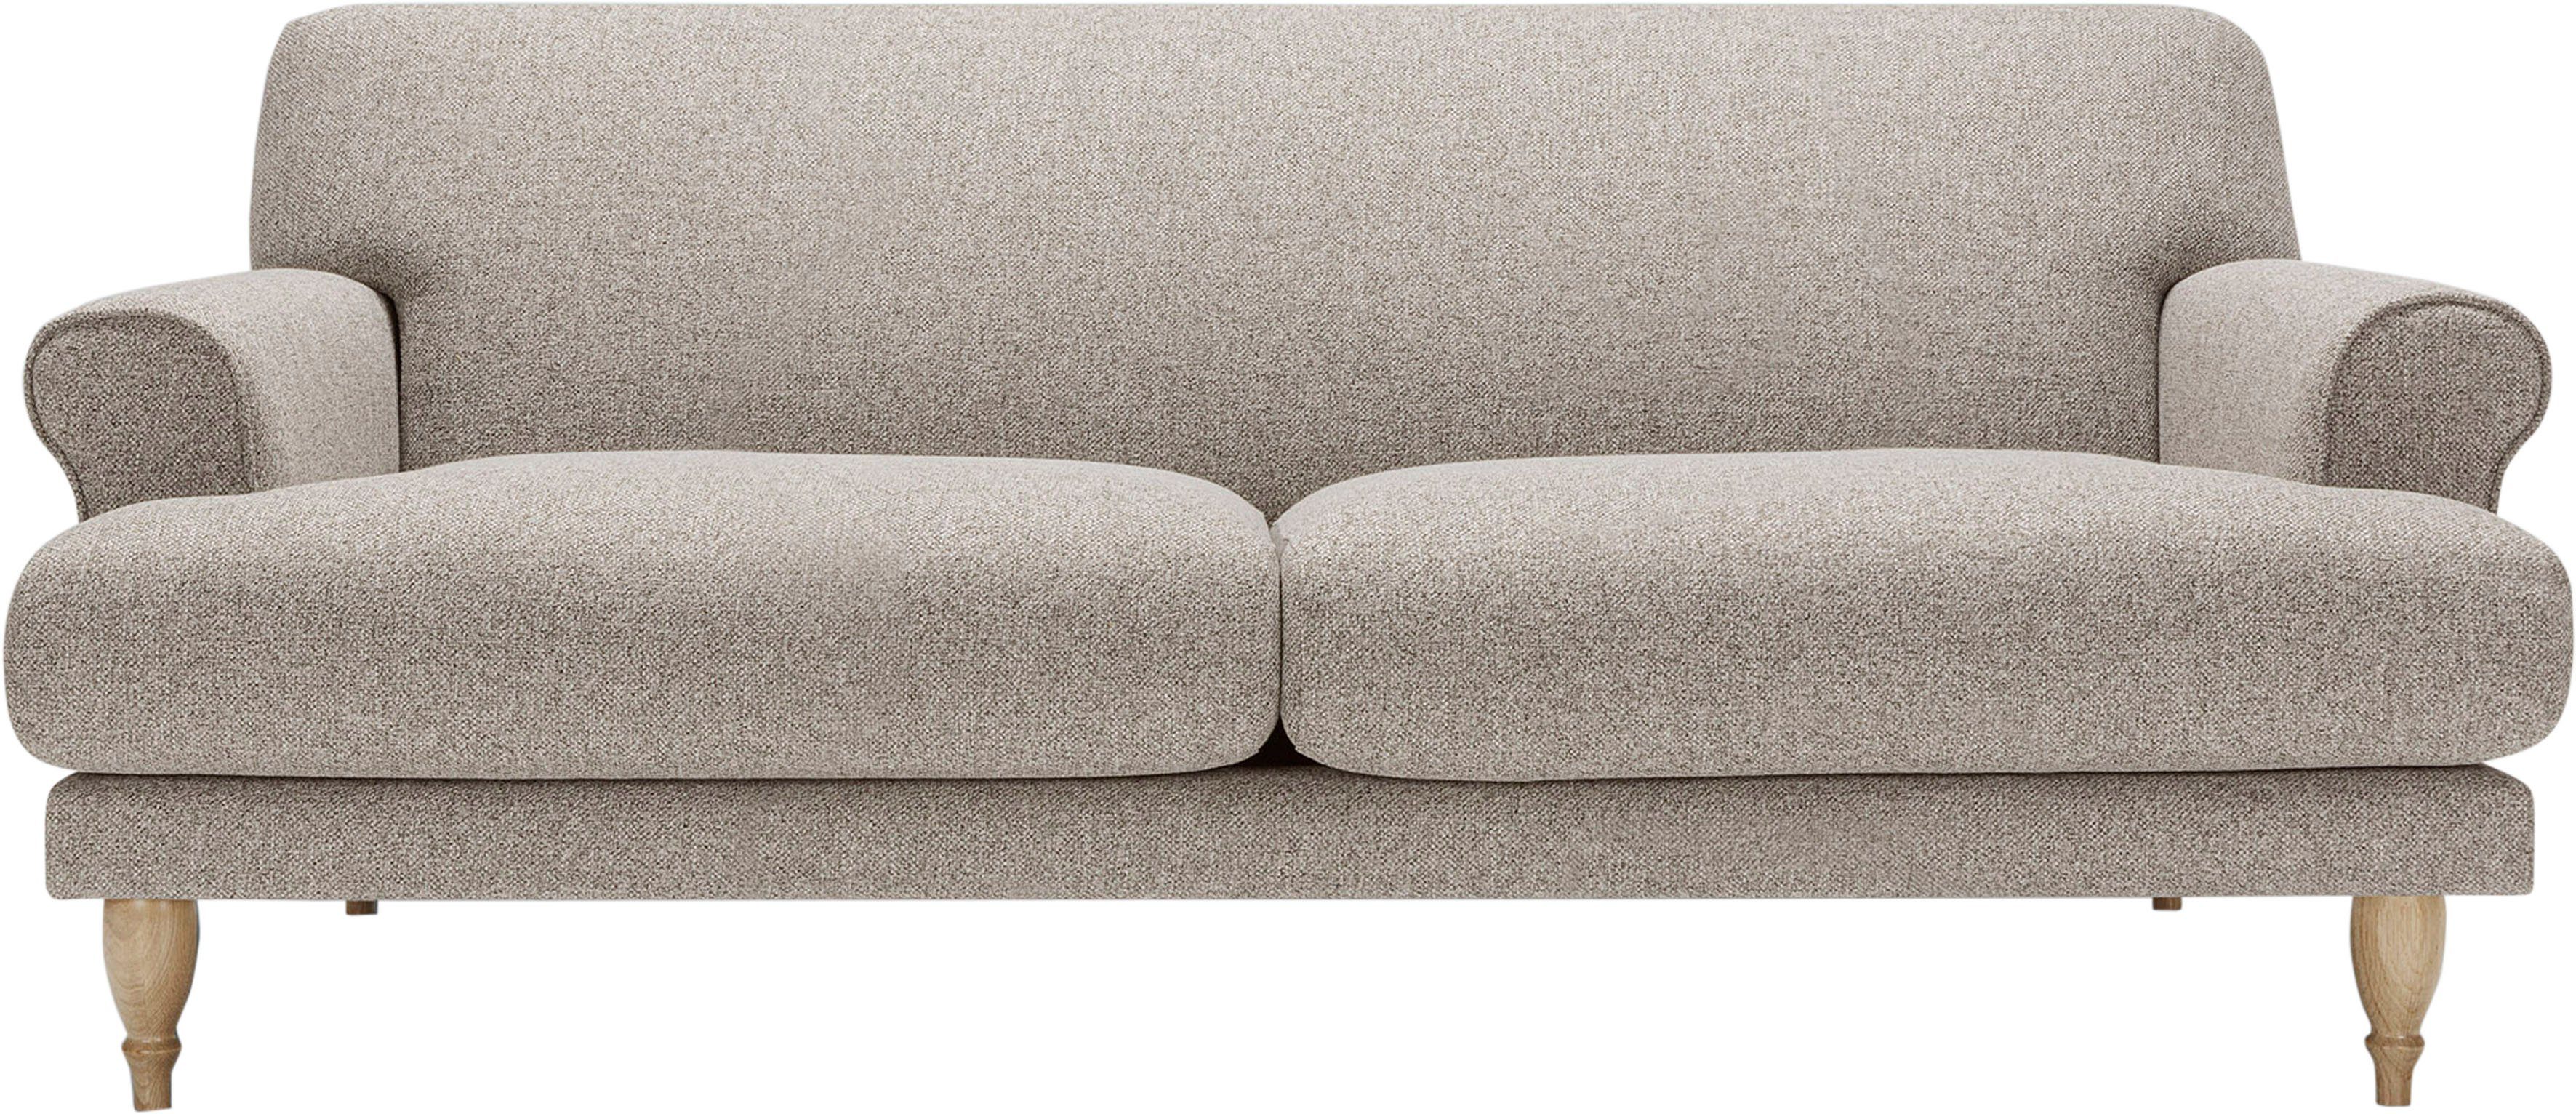 LOVI Sofa Ginger, 2-Sitzer, Füße in Eiche natur, Sitzunterfederung mit Polsterunterlage